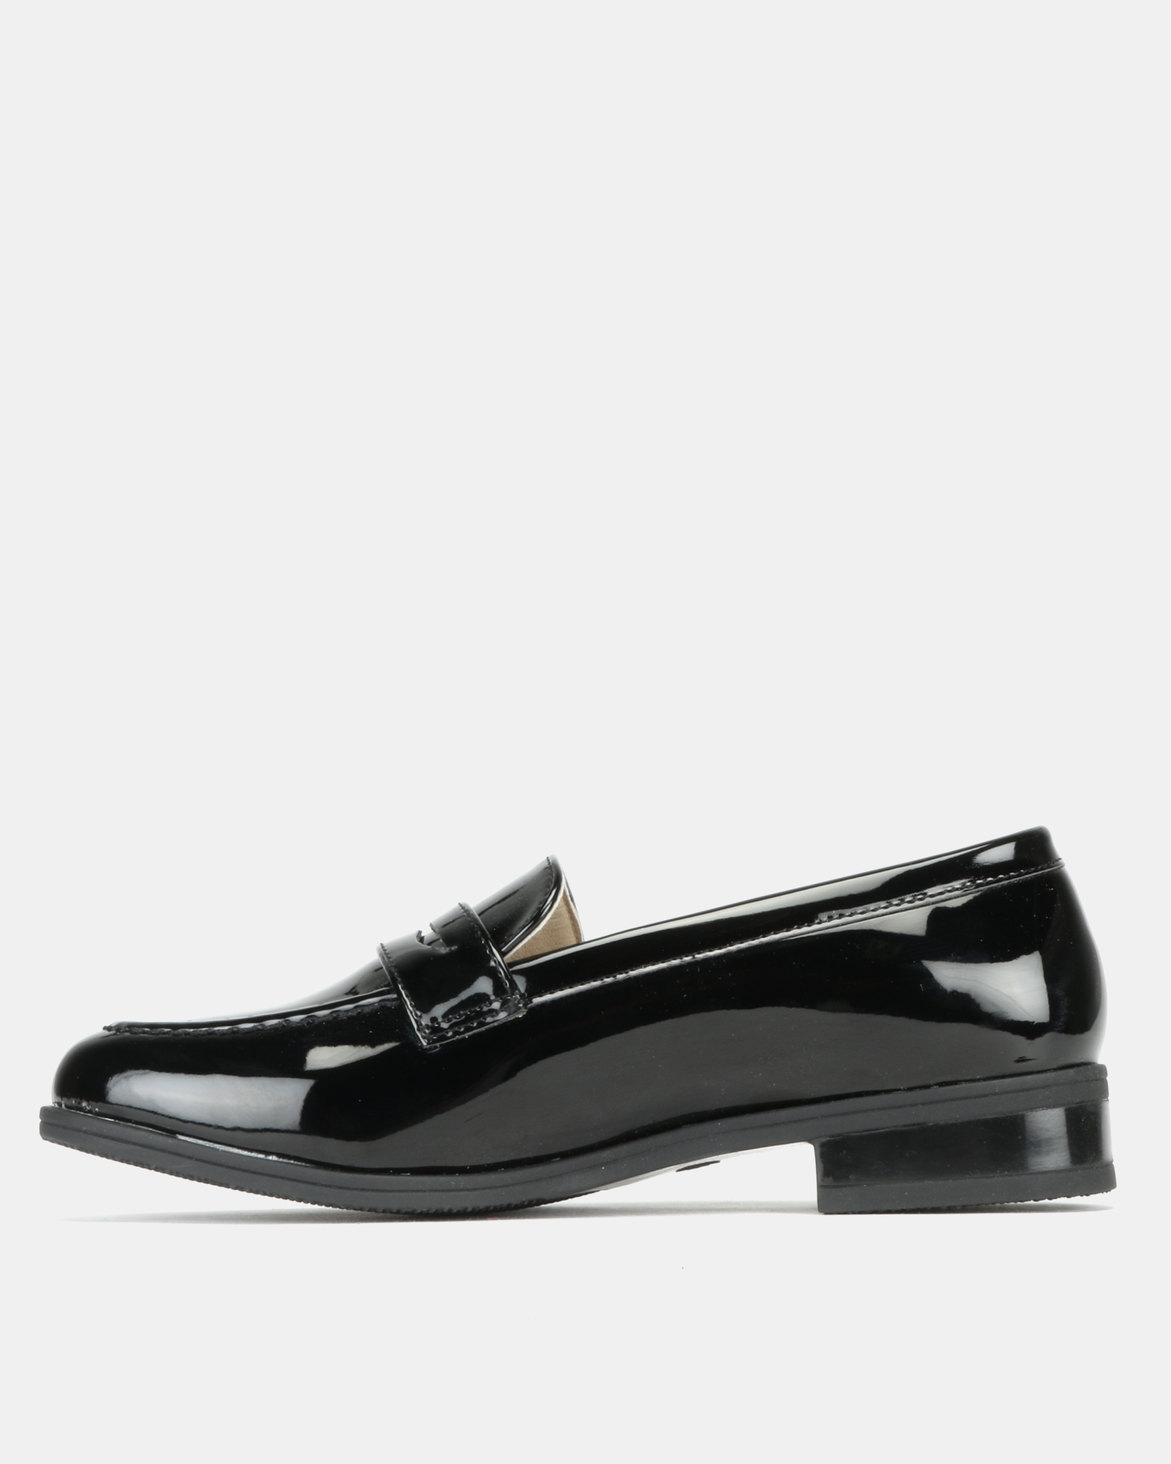 Pierre Cardin Patent Loafer Shoes Black | Zando